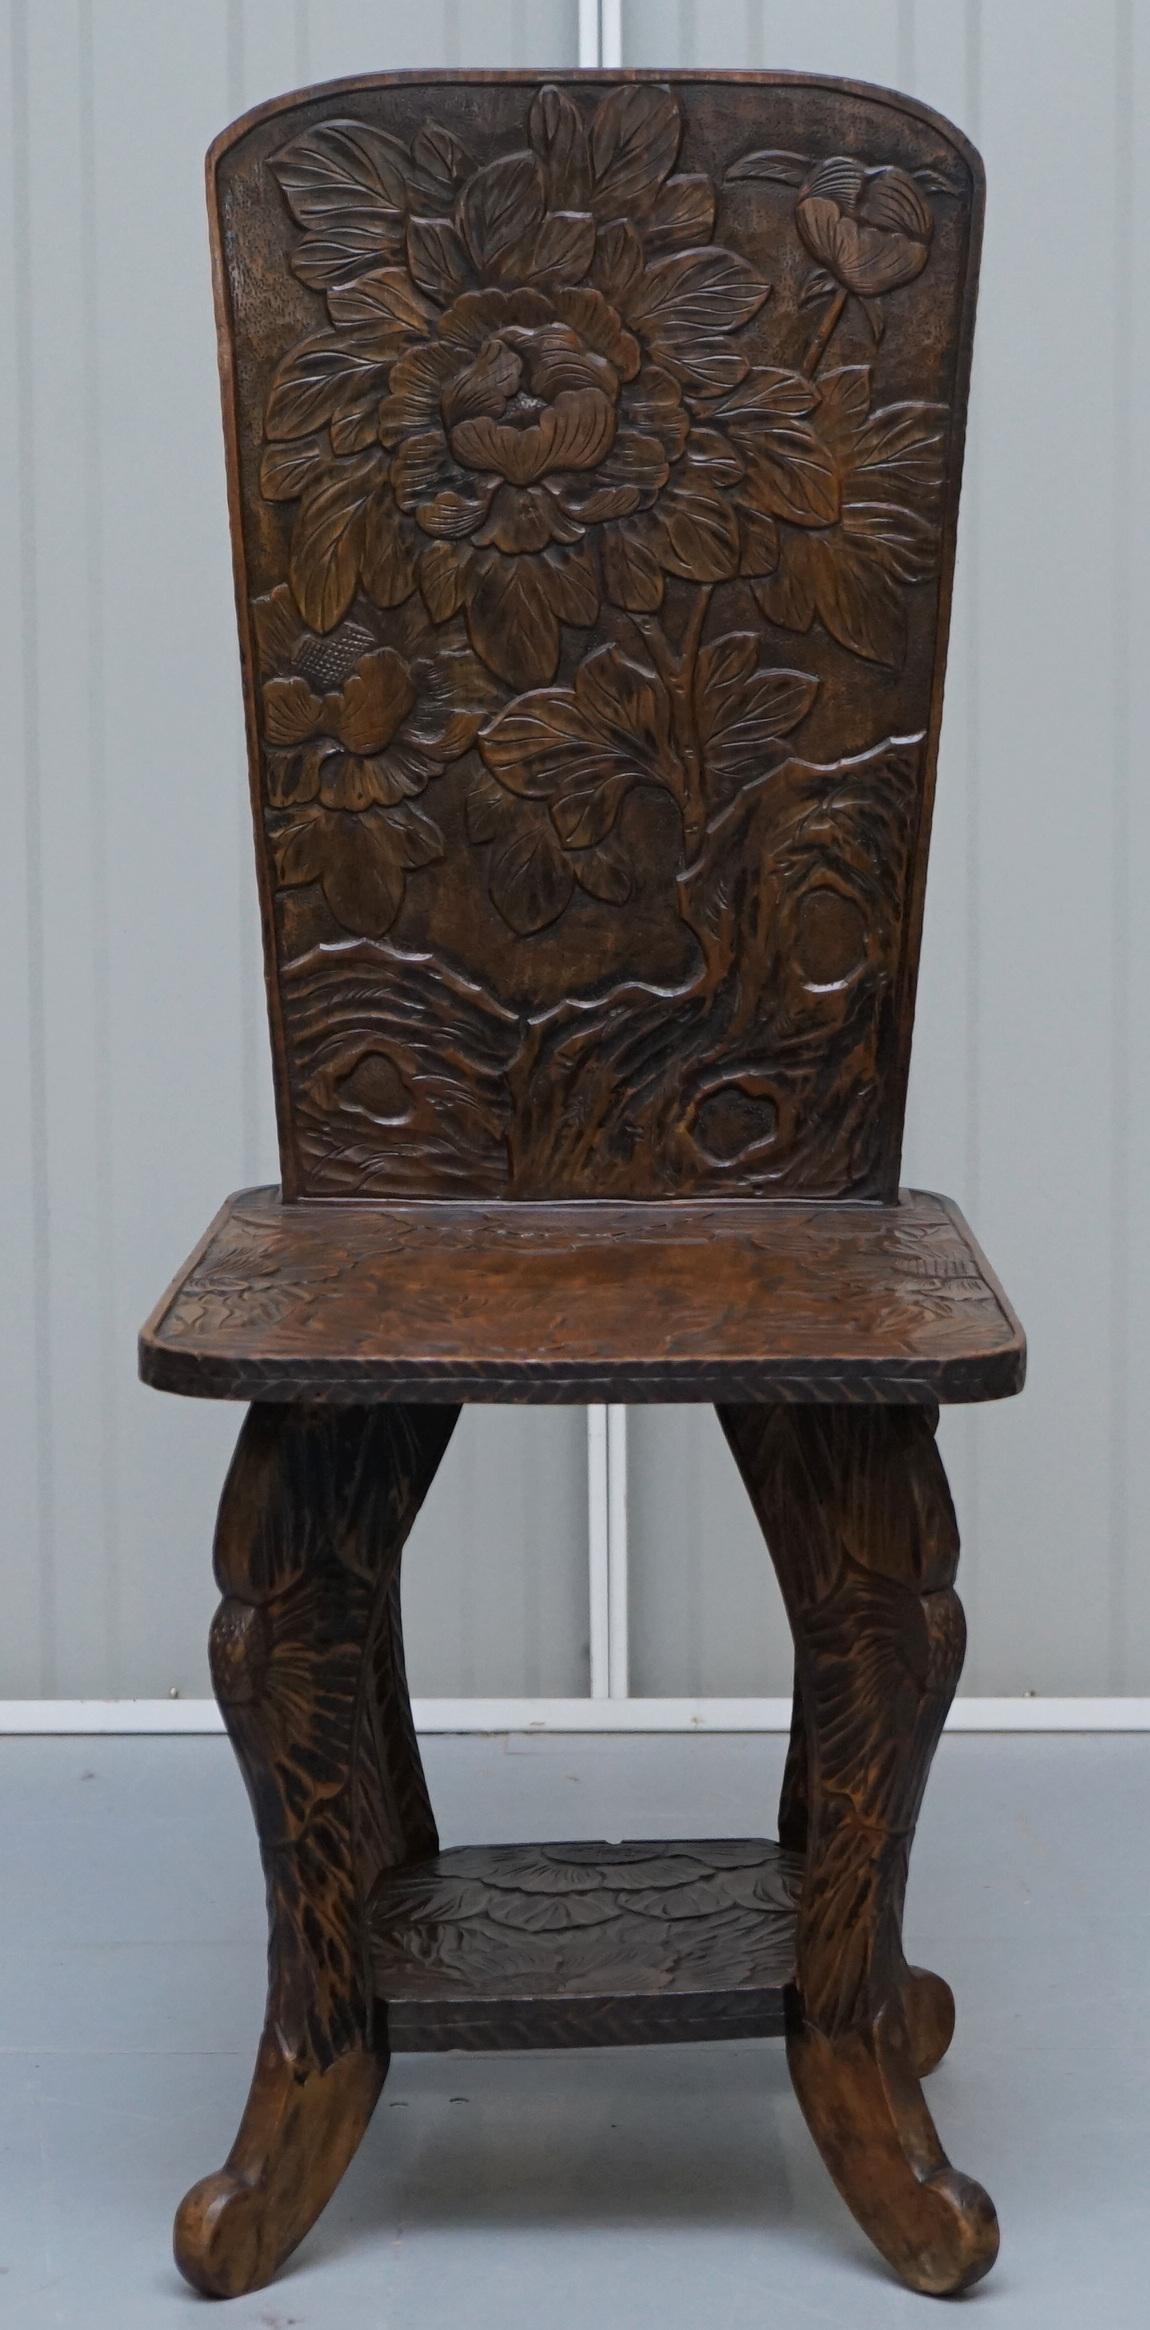 Nous sommes ravis de vous présenter cette superbe et exceptionnellement rare chaise originale de la dynastie Qing signée Liberty's London.

Je n'ai jamais vu une de ces chaises auparavant, j'ai acheté pas mal de tables d'appoint et j'en ai même 2